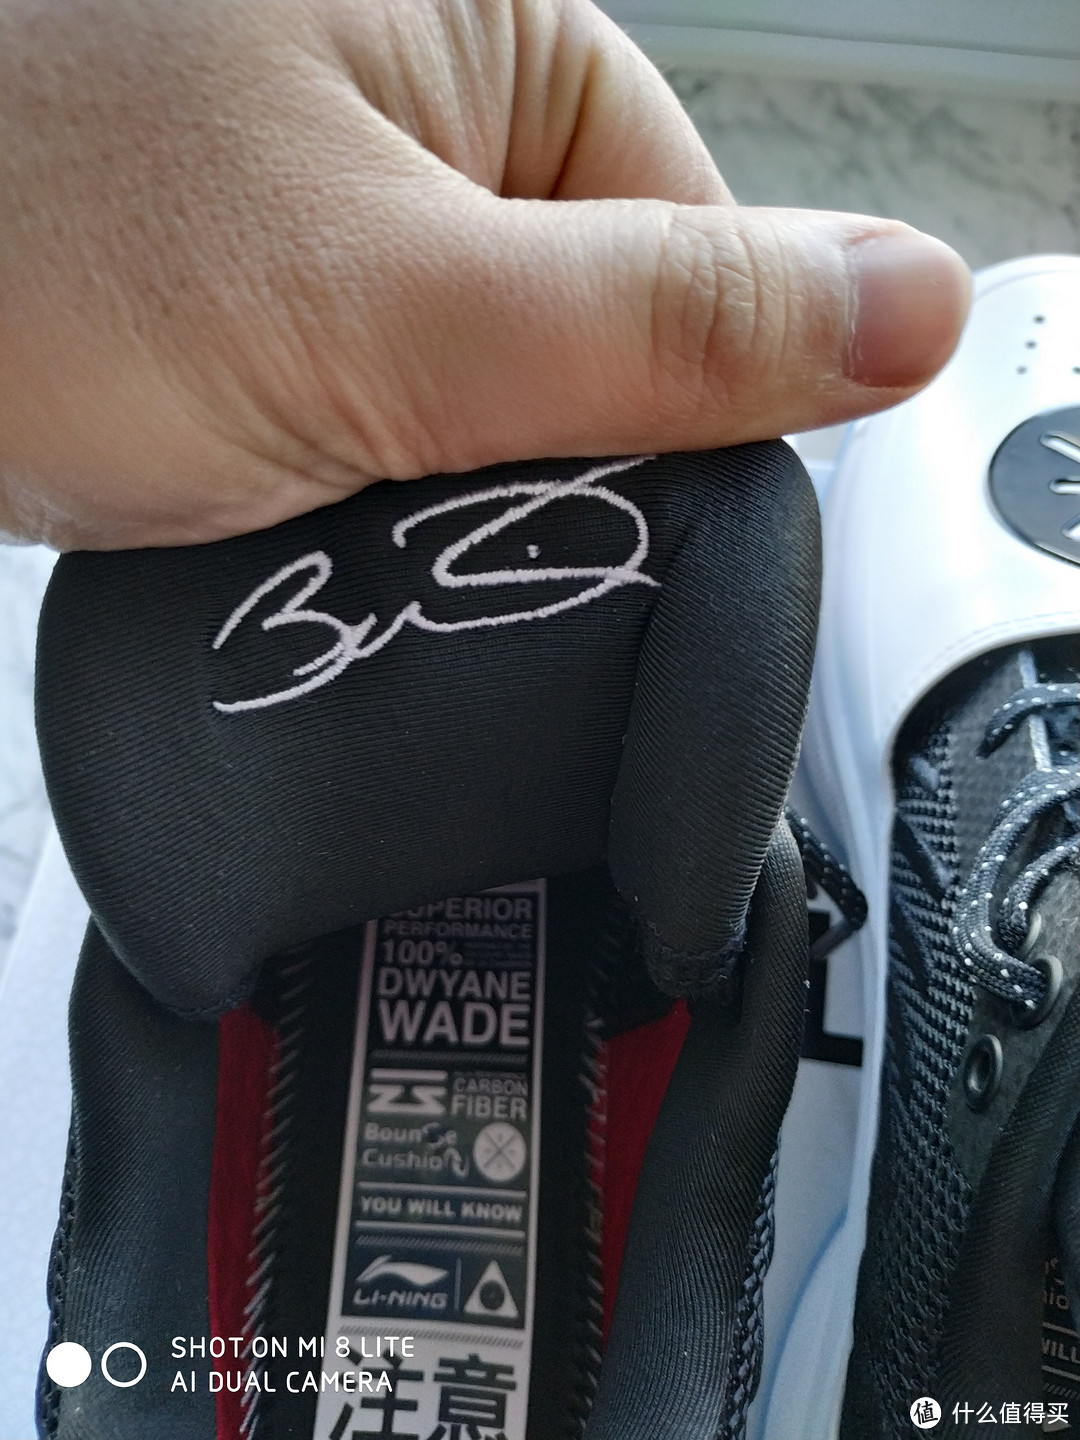 鞋舌上韦德的签名，各种韦德的细节（请忽视我那糙老爷们的手，手动微笑）